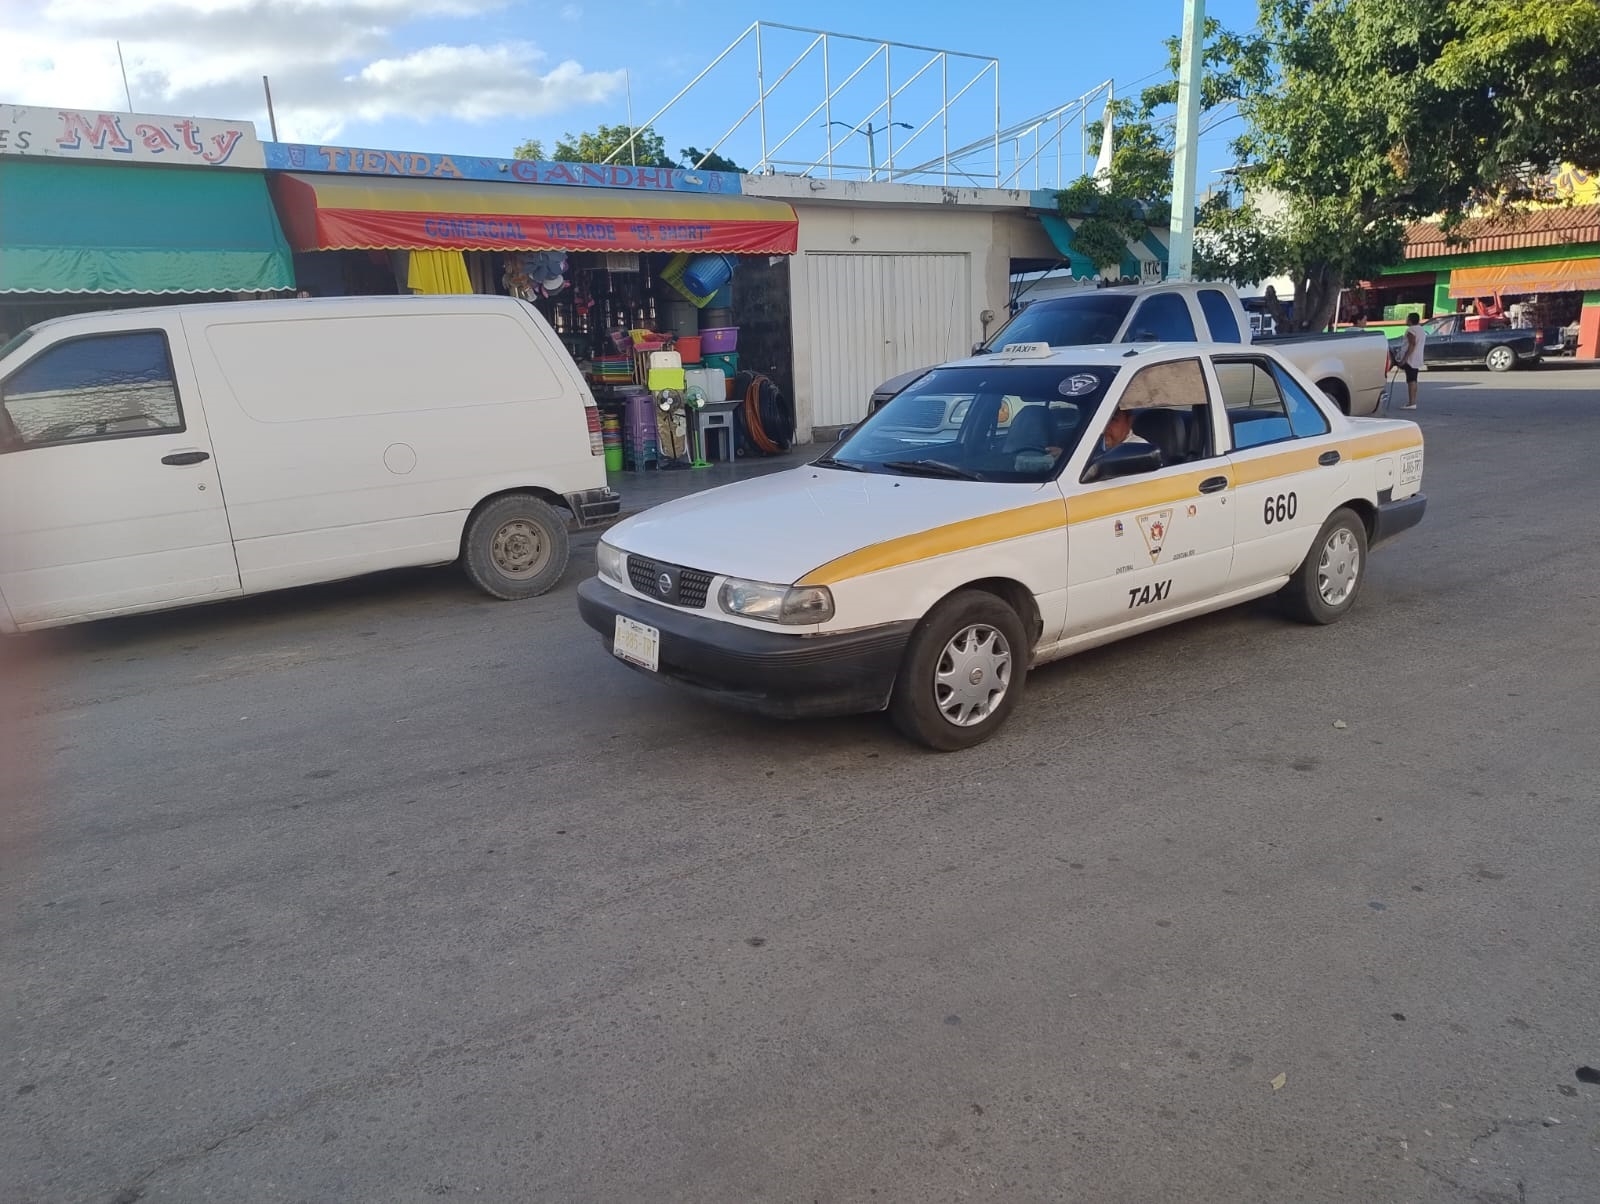 Chetumaleños ponen en evidencia el exceso de cobro y la nueva tarifa NO autorizada por el Instituto de Movilidad de Quintana Roo